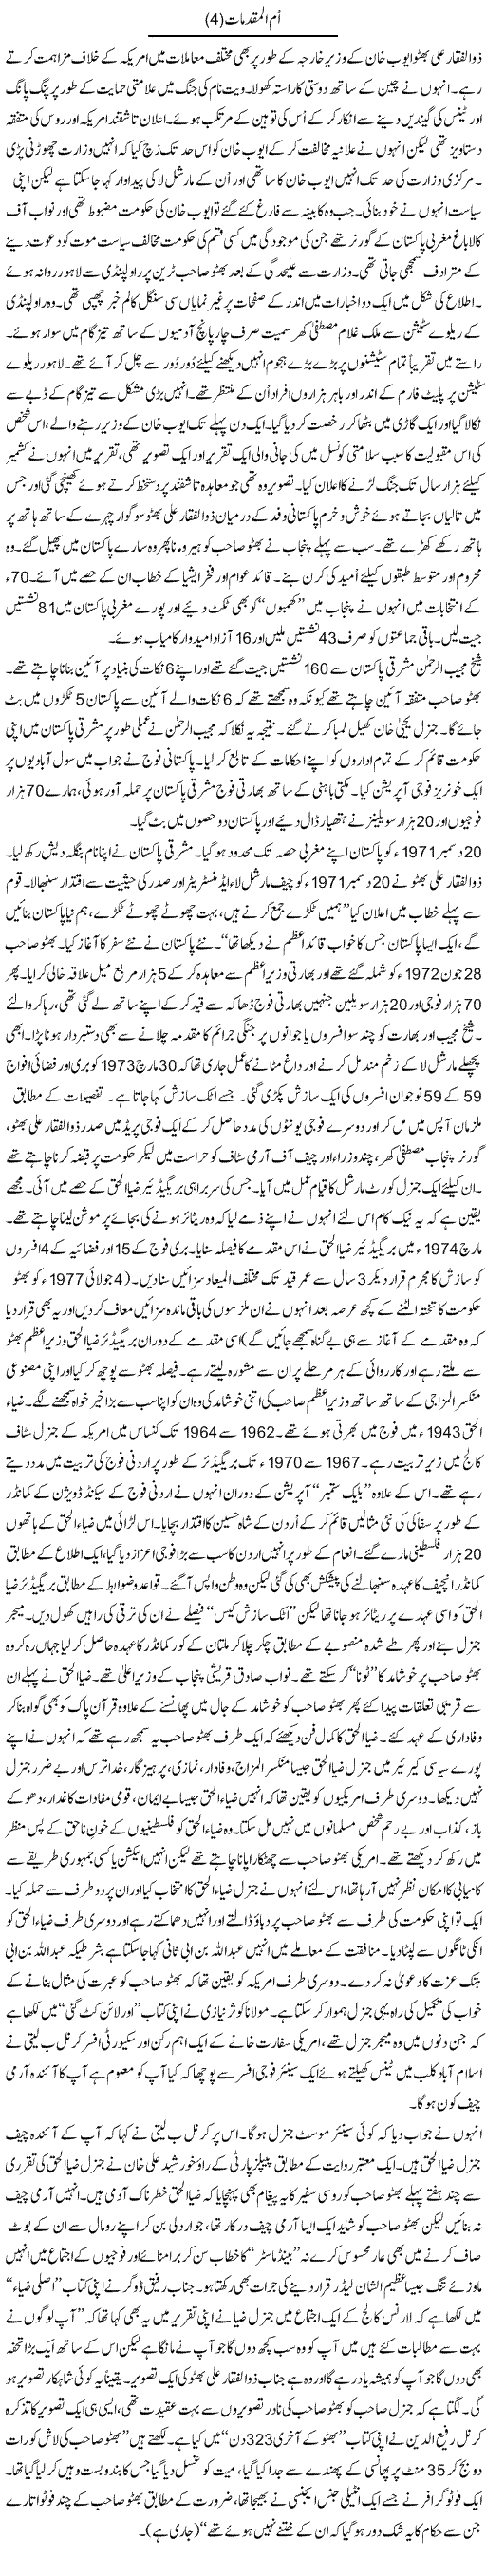 Bhutto Case Express Column Abbas Athar 26 April 2011